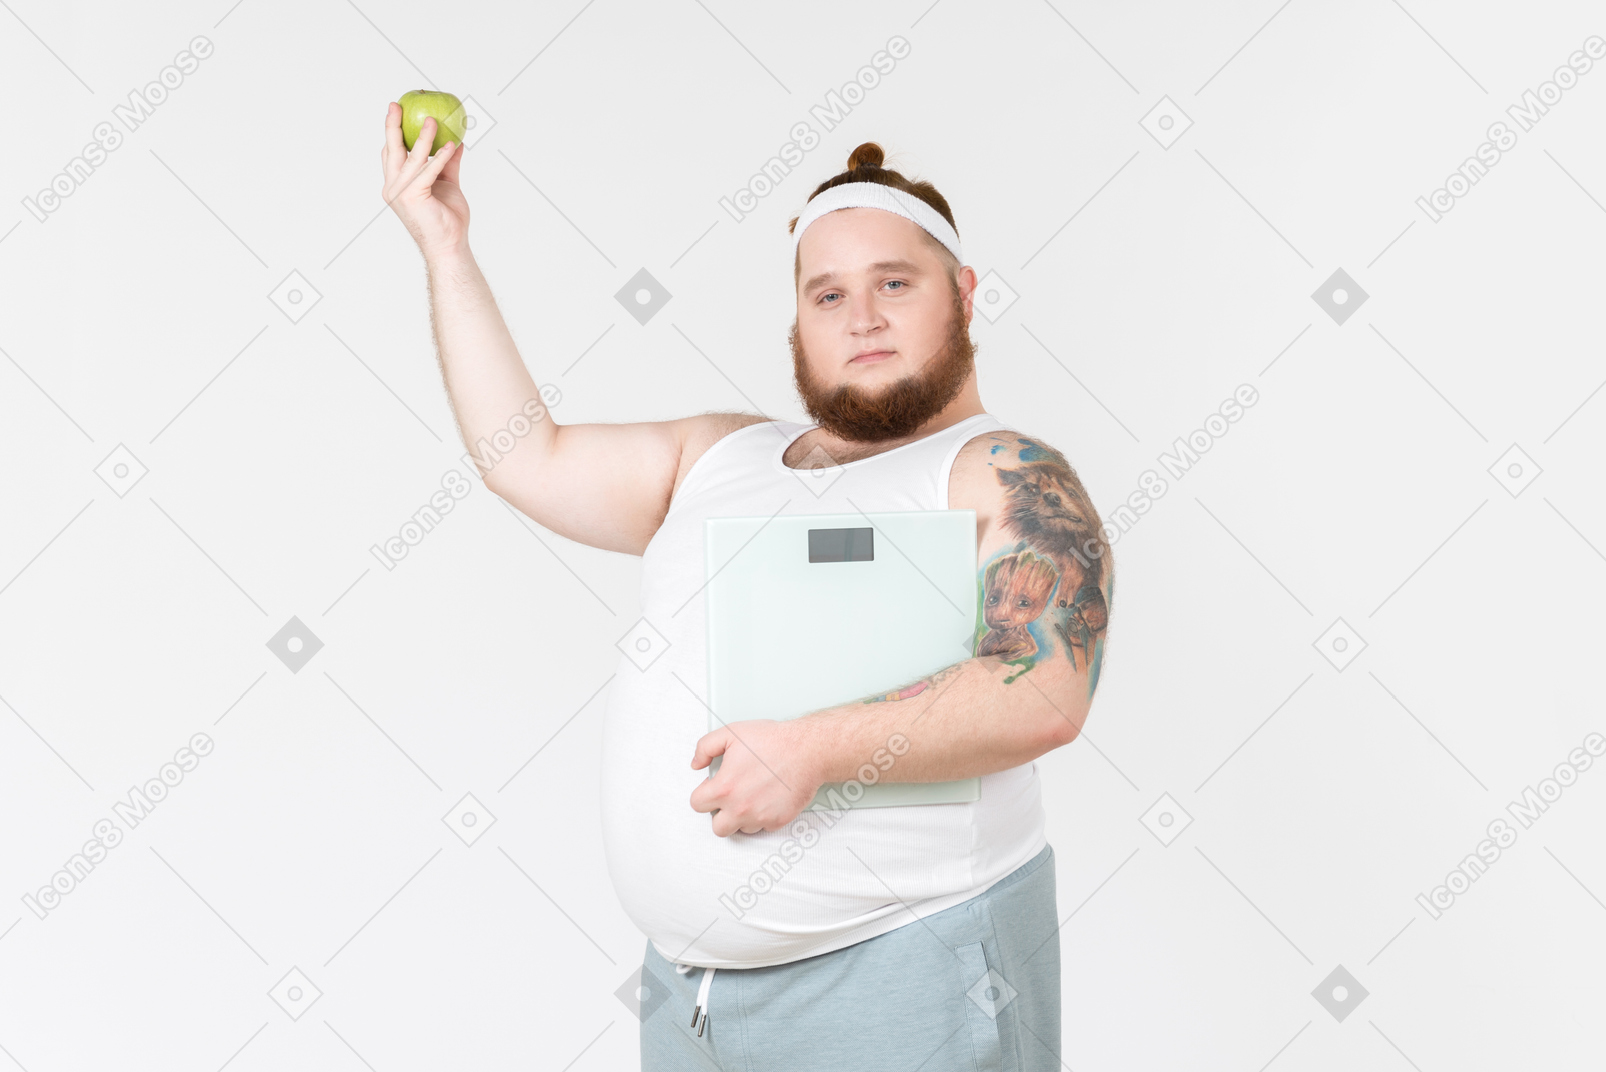 Giovane ragazzo in abiti sportivi con pesi e mela